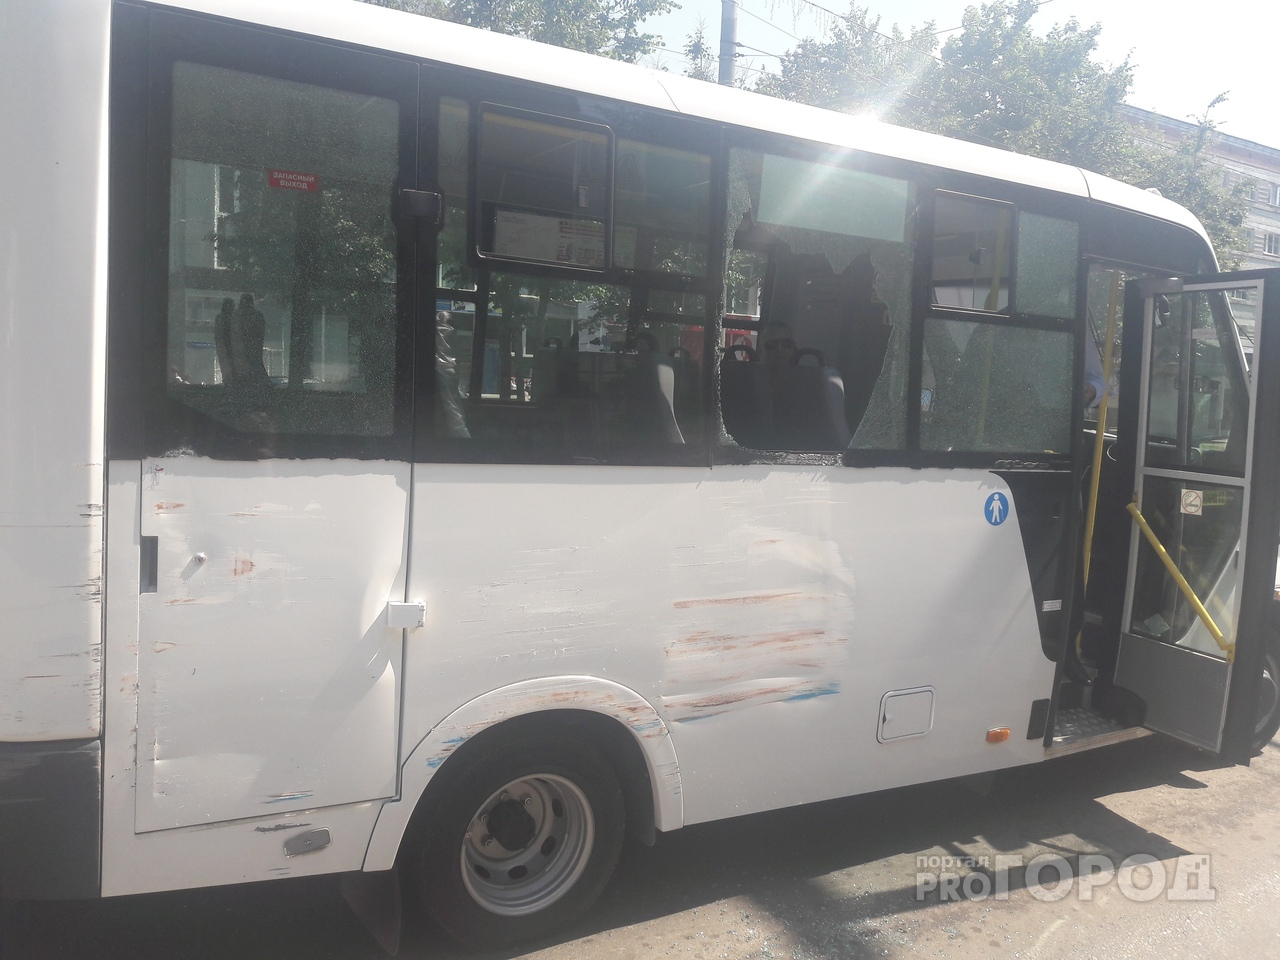 ДТП в Йошкар-Оле: троллейбус и маршрутка не поделили остановку